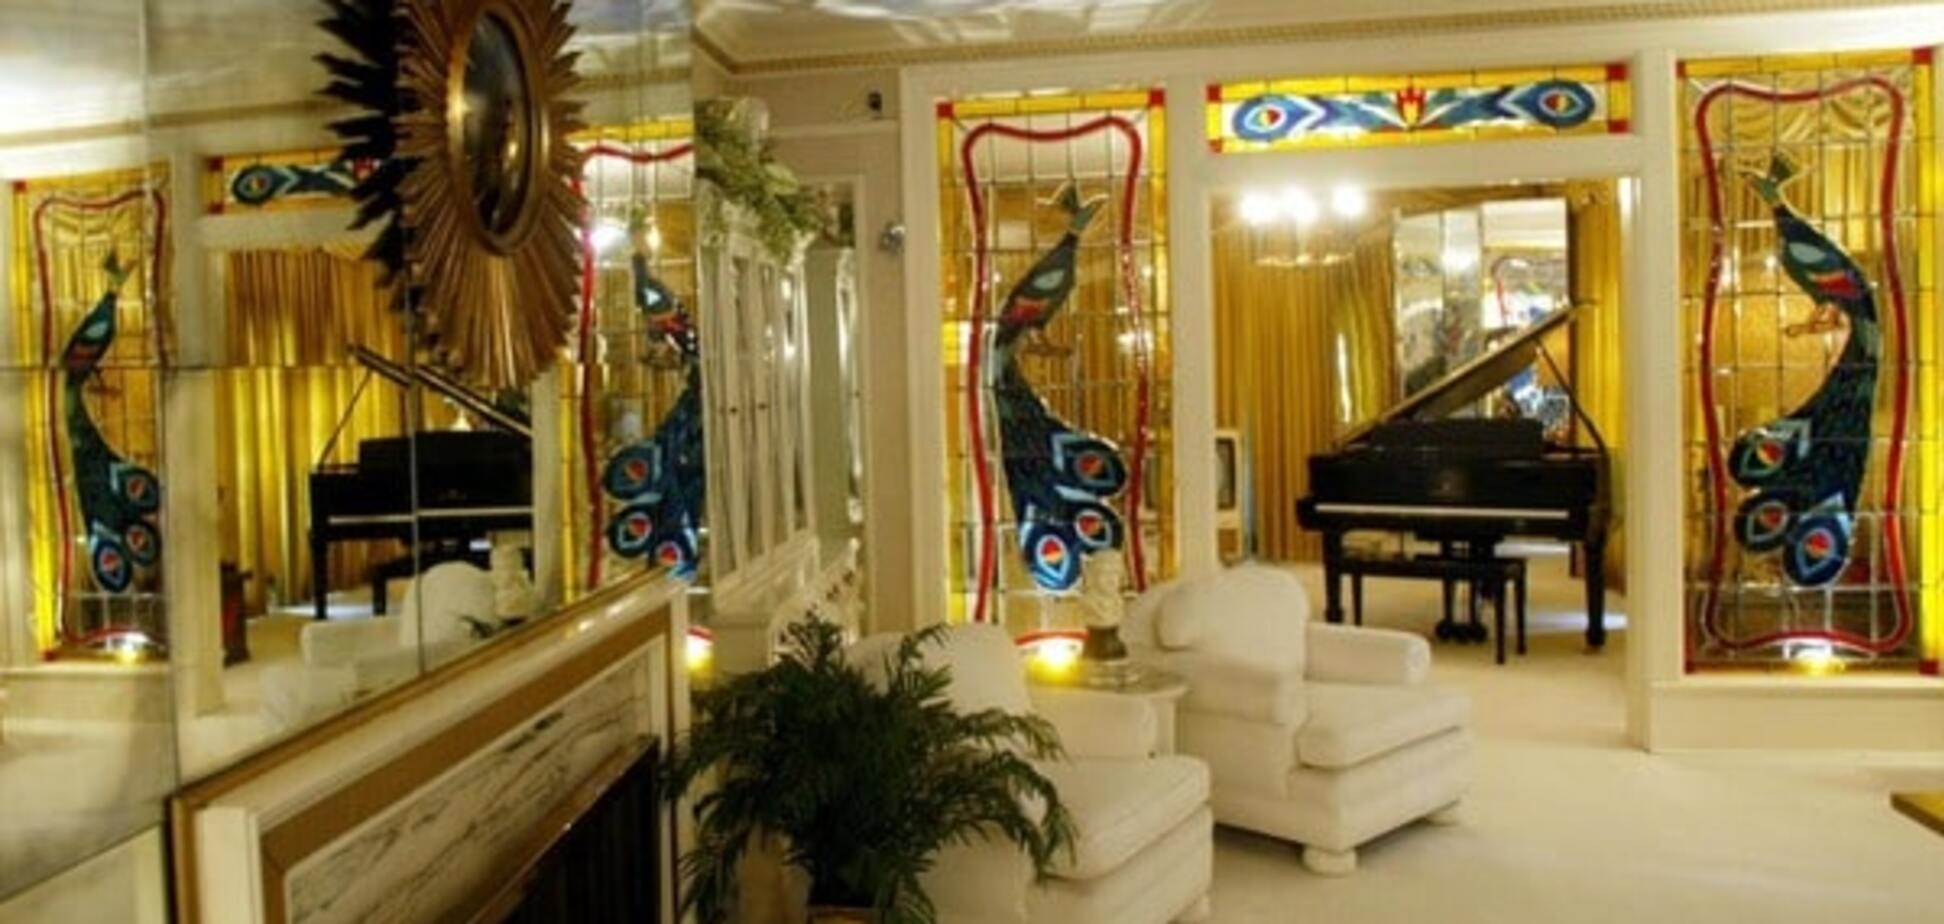 Дом музыканта Элвиса Пресли в Мемфисе